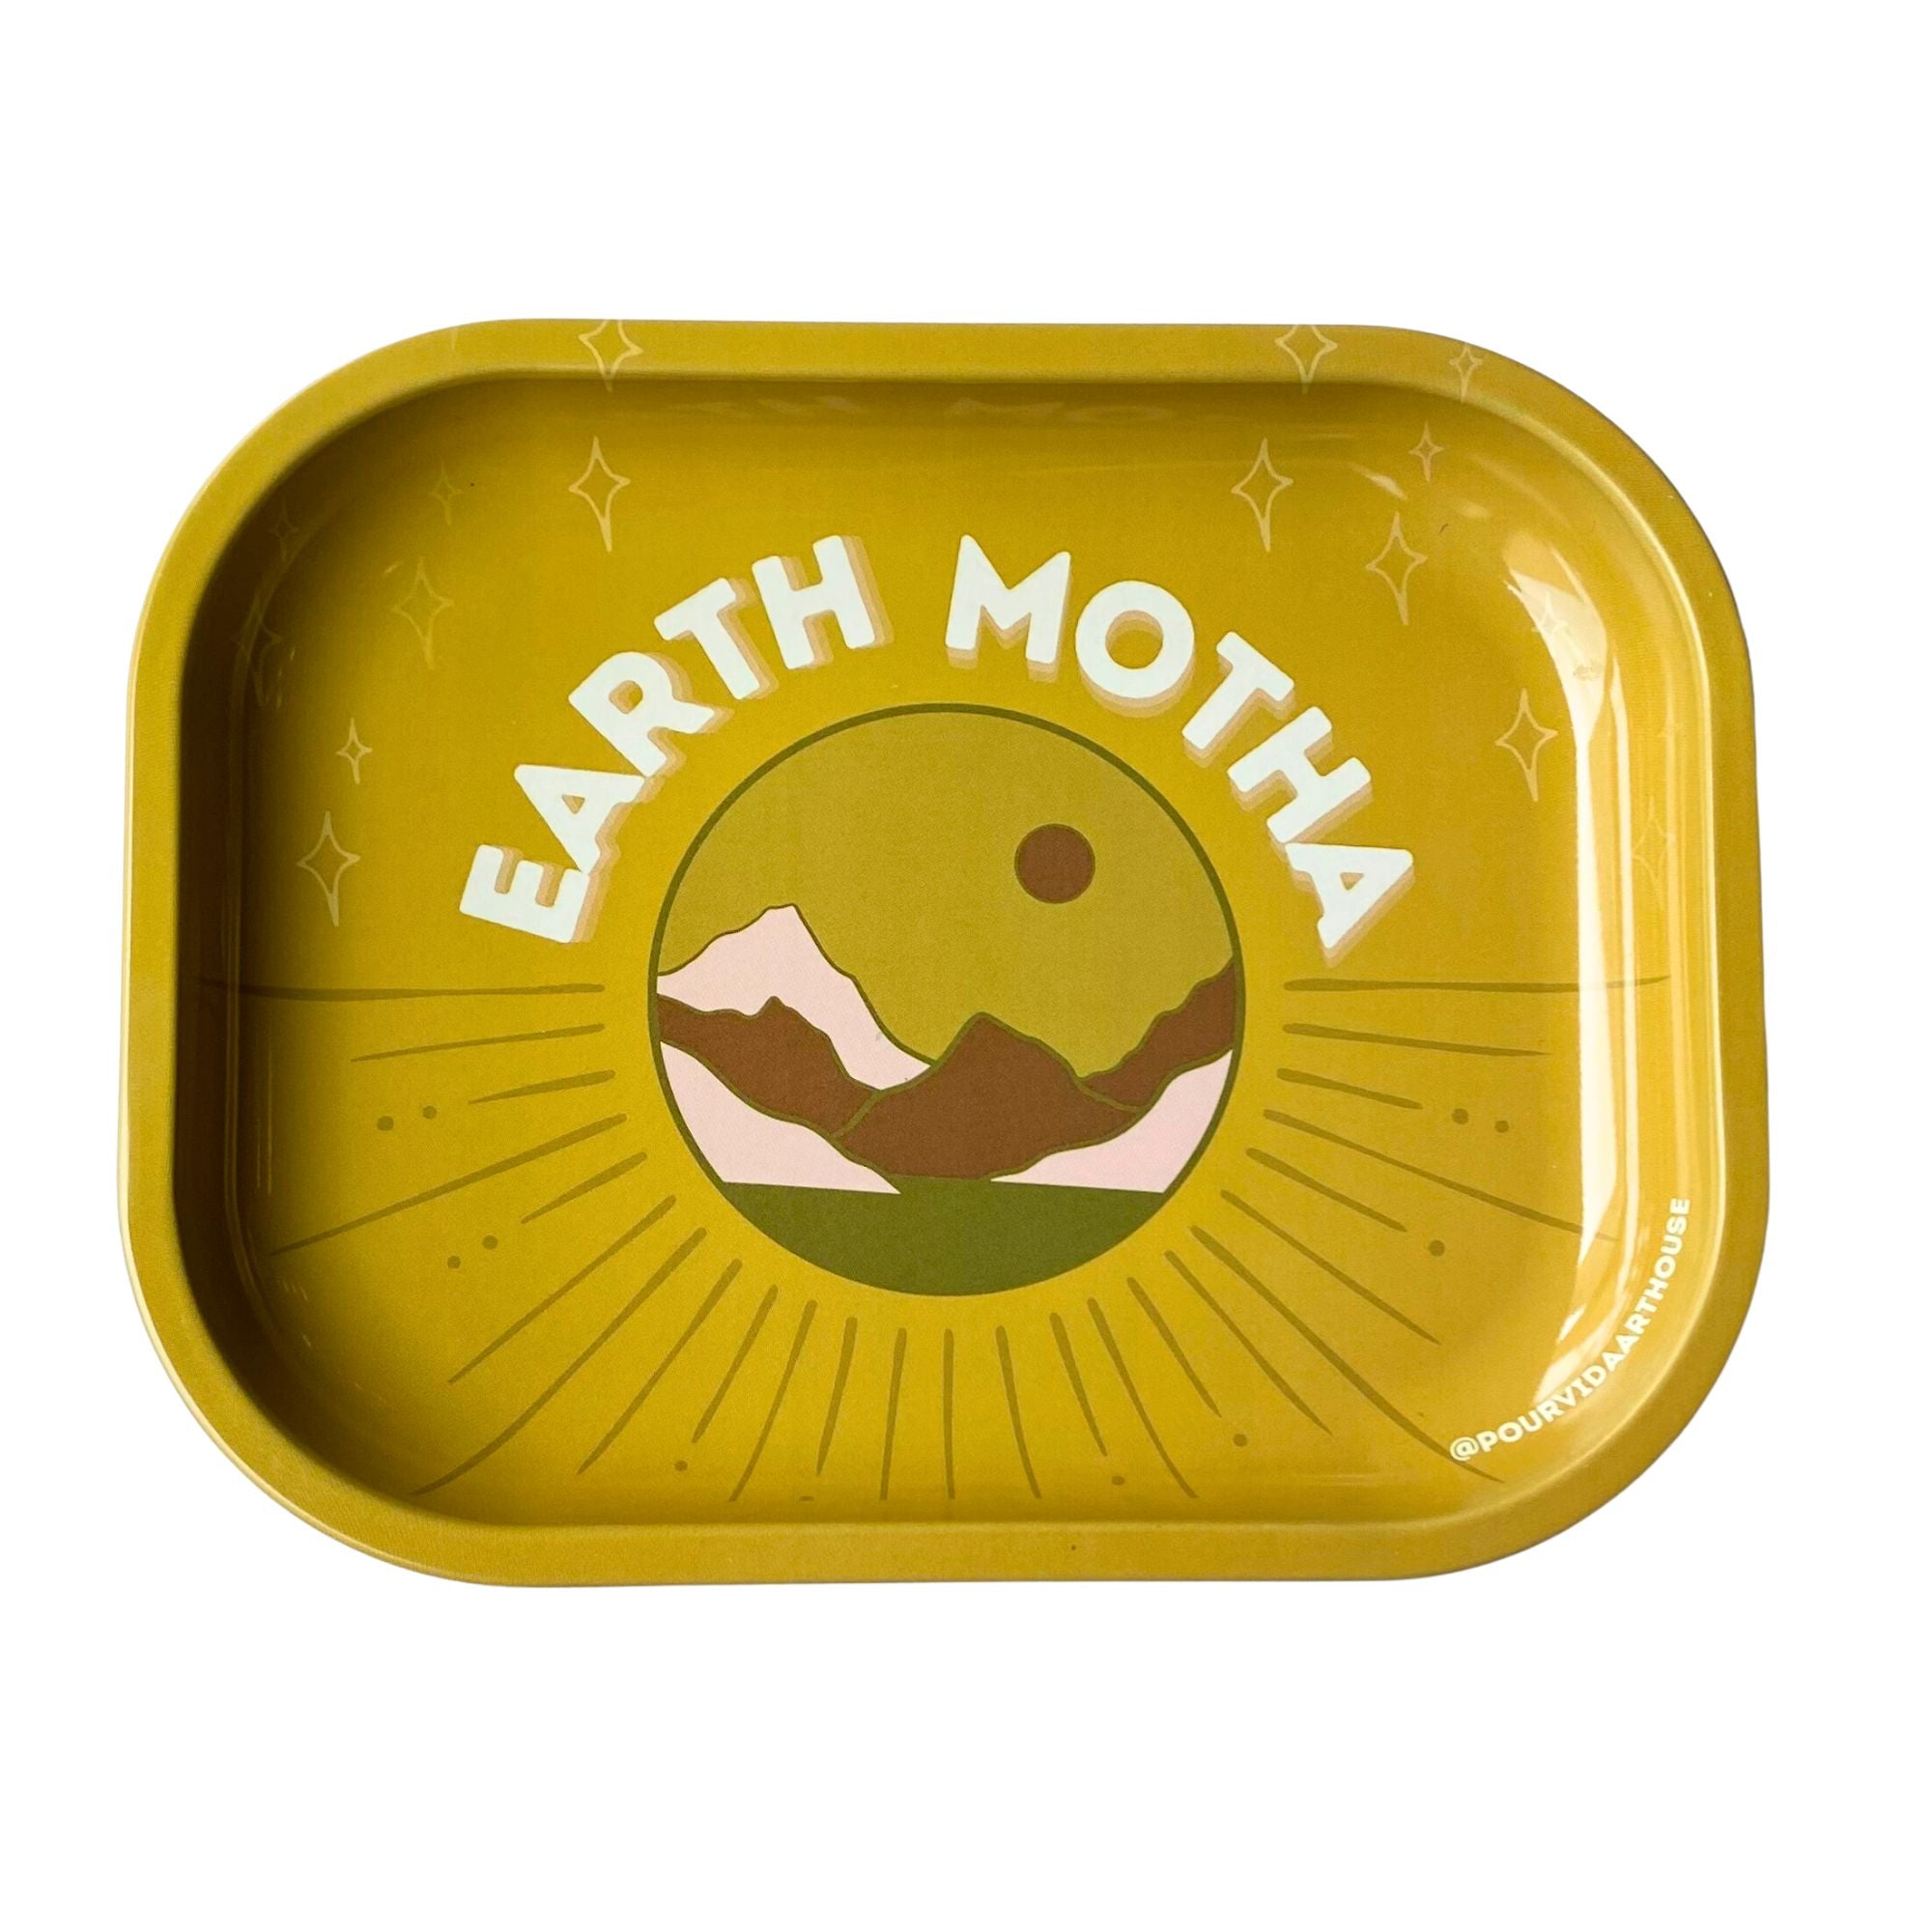 Earth Motha Tray